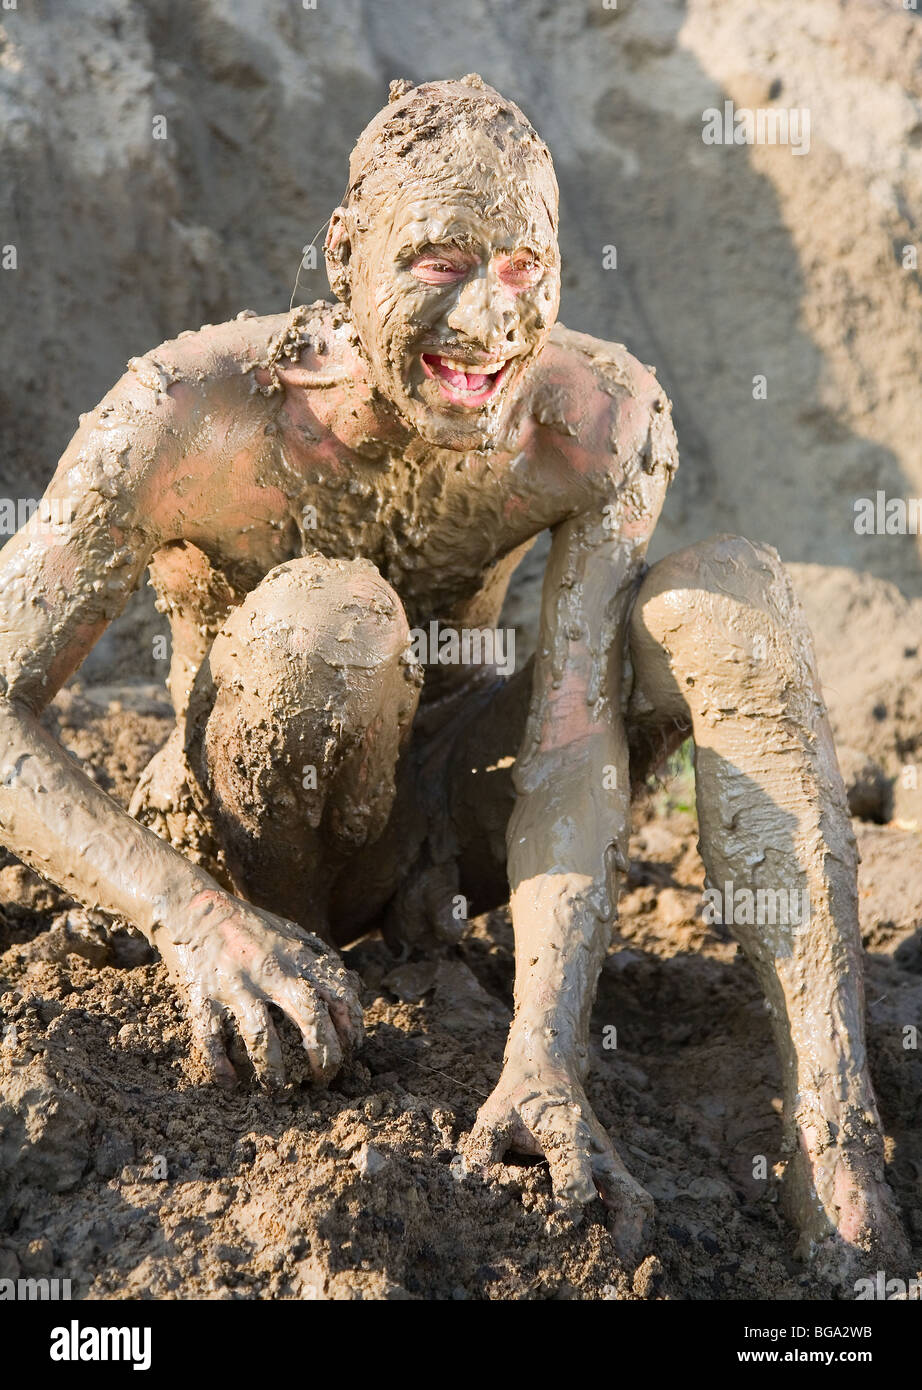 Mud Naked People Aras Baskauskas Desnudo